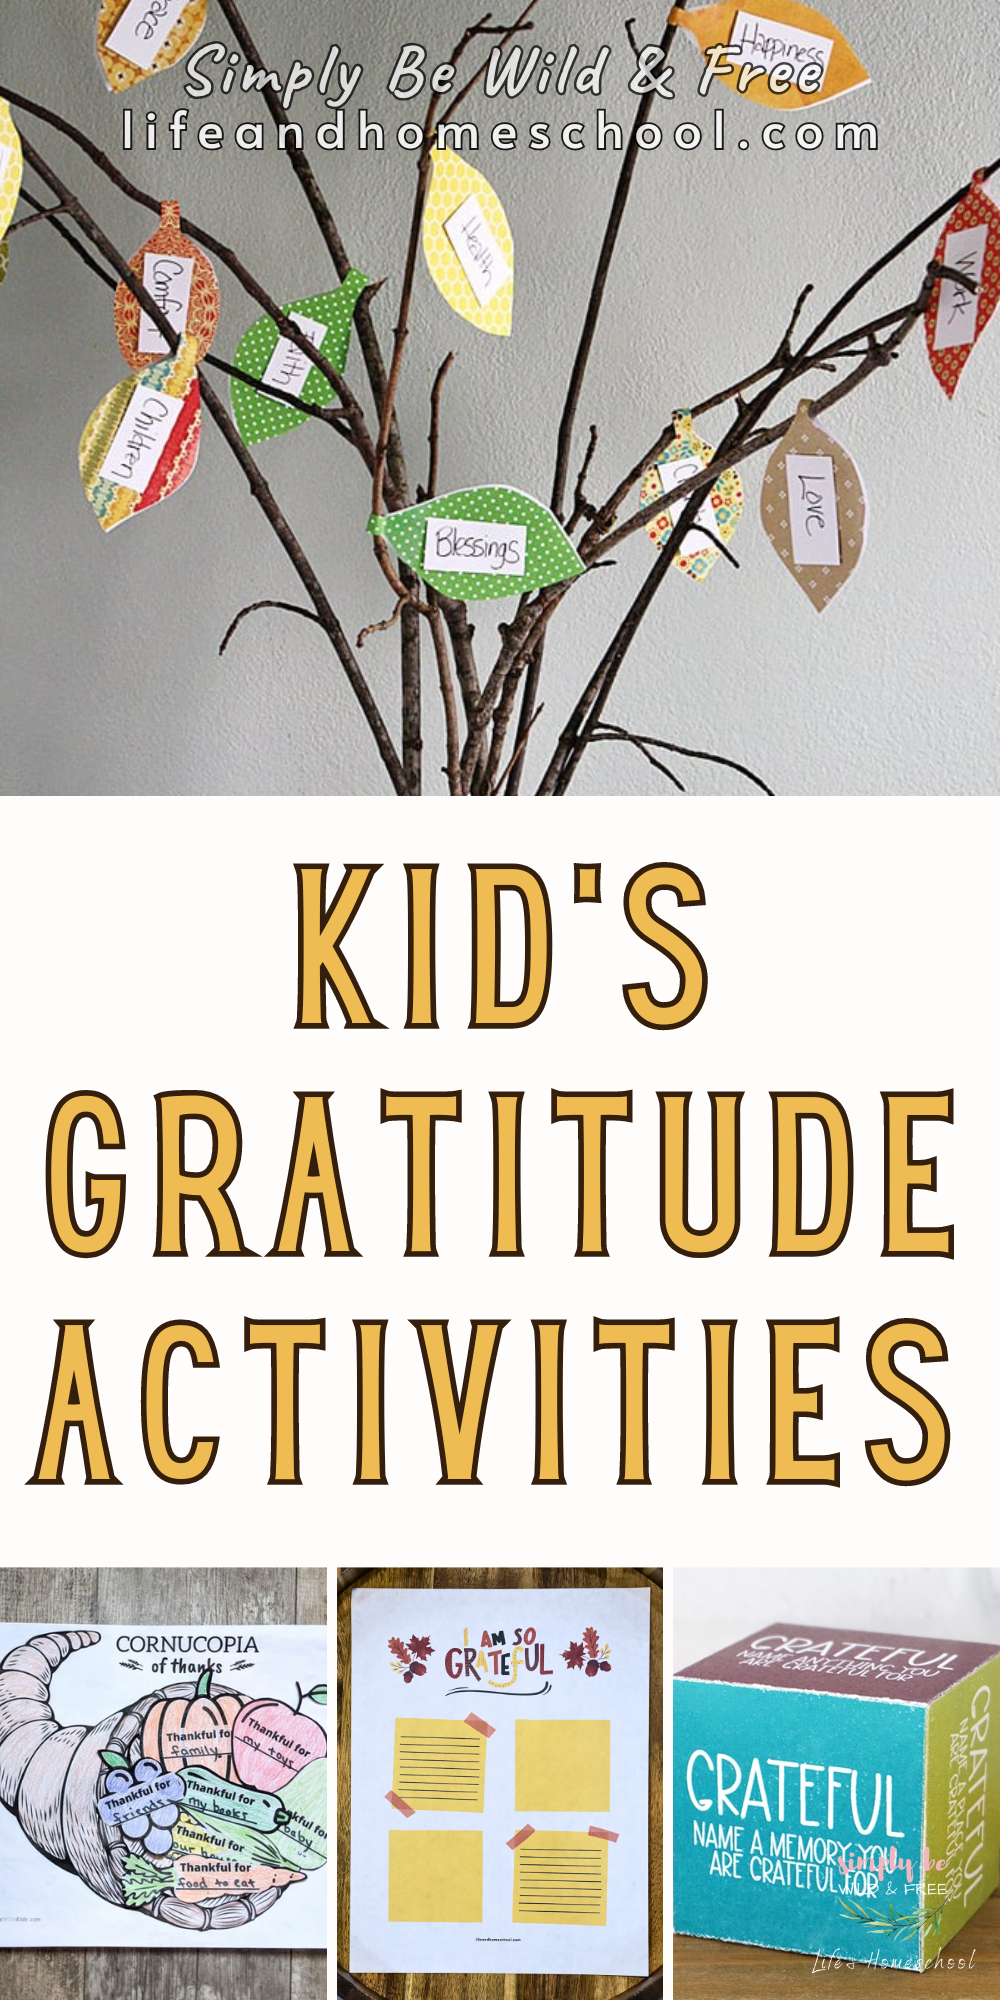 Gratitude Activities for Kids